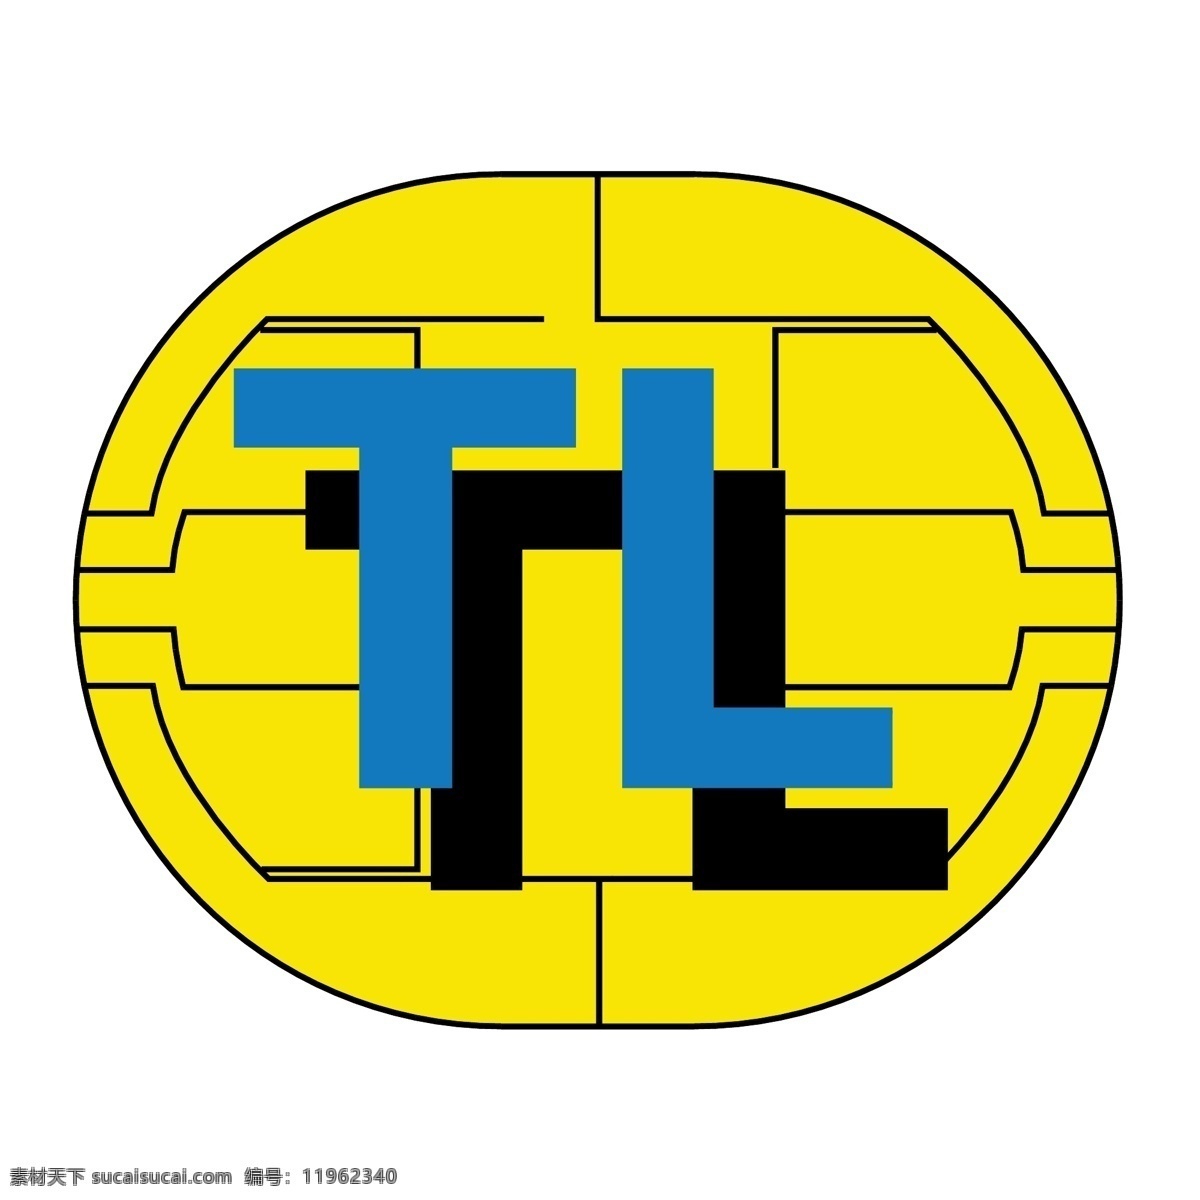 logo矢量 办公室 语言 矢量标志语 矢量tl标识 标识语 tl标志 tl向量 向量tl 向量自由tl tl 矢量tl 矢量 tl自由 矢量图 建筑家居